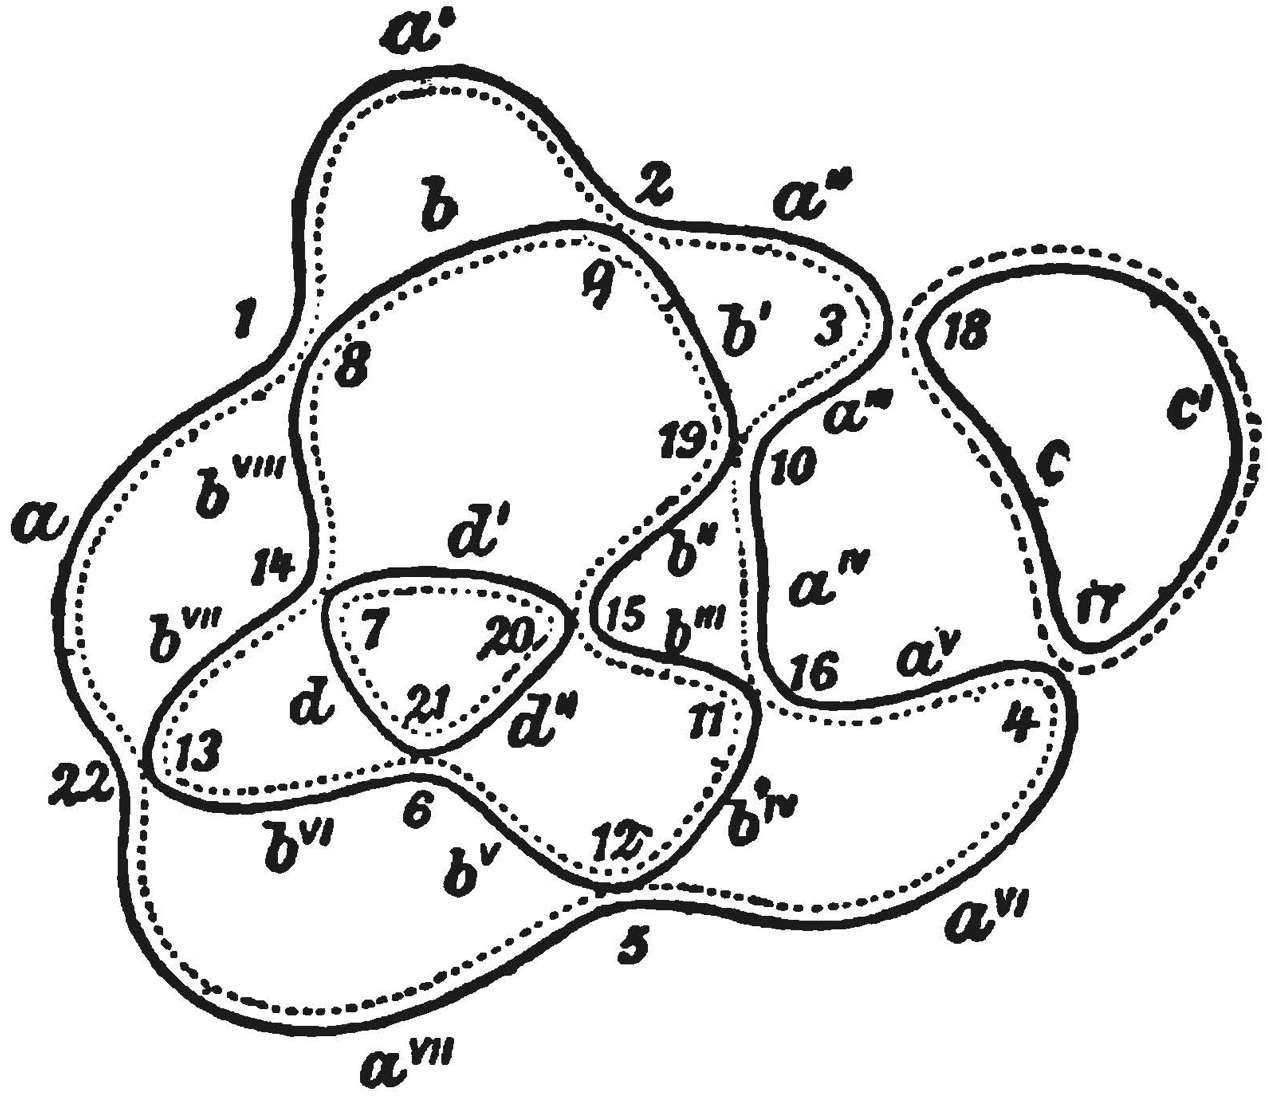 Gauss’s example of a Seifert decomposition